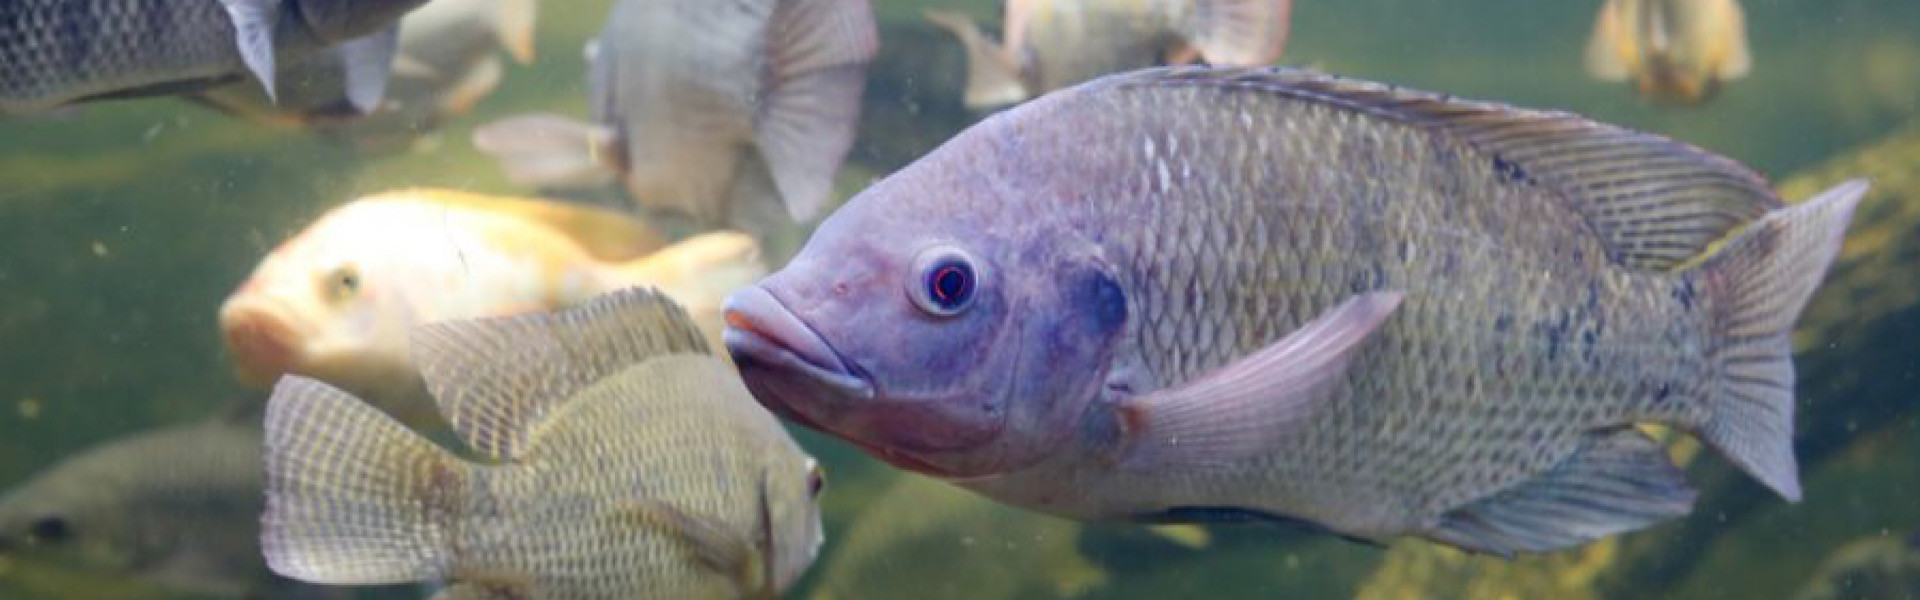 Tilápia no mar? De acordo com pesquisadores, peixe de água doce está se adaptando e se espalhando